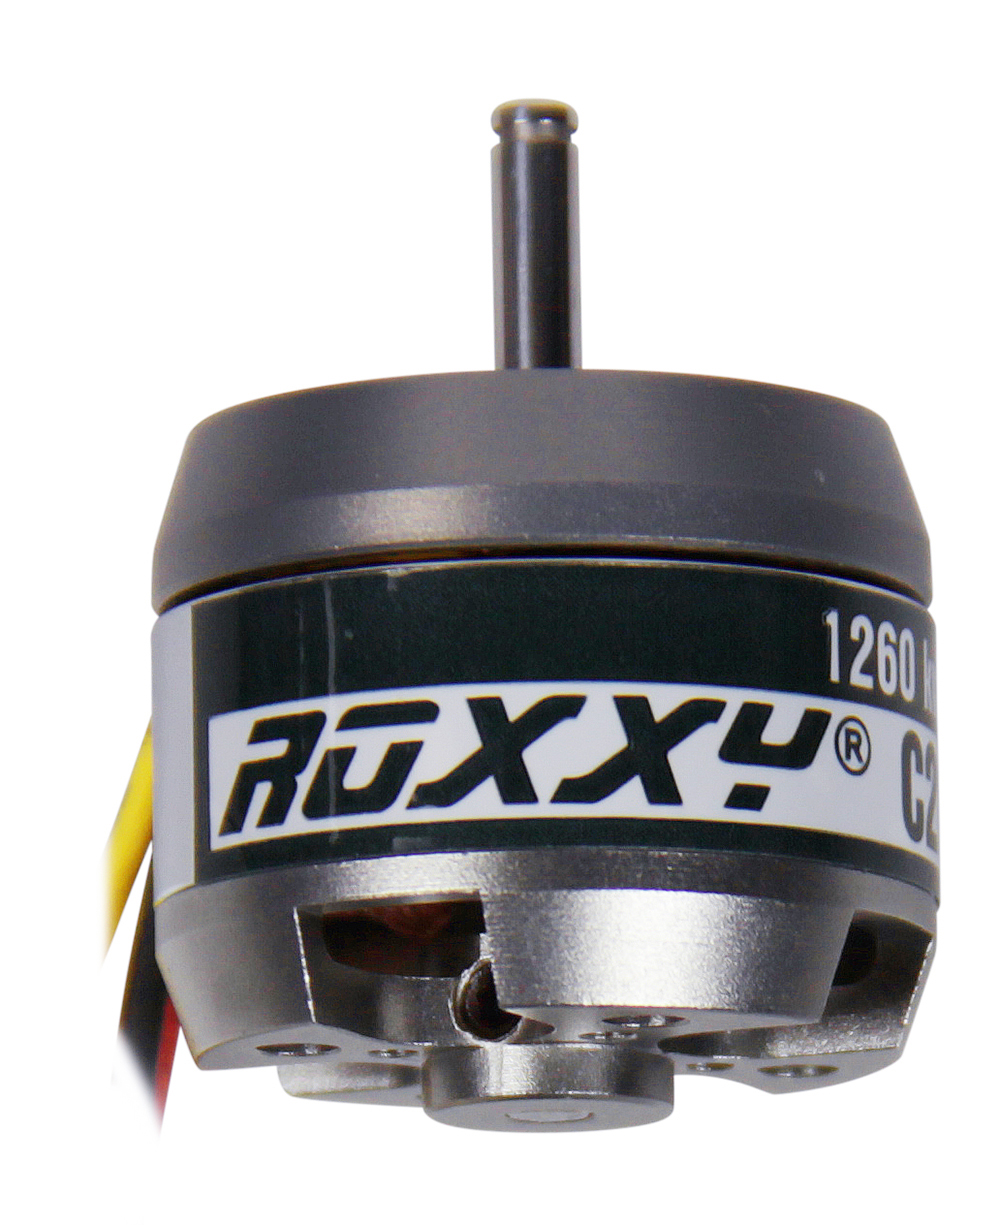 Multiplex ROXXY BL Outrunner C28-26-1260kV